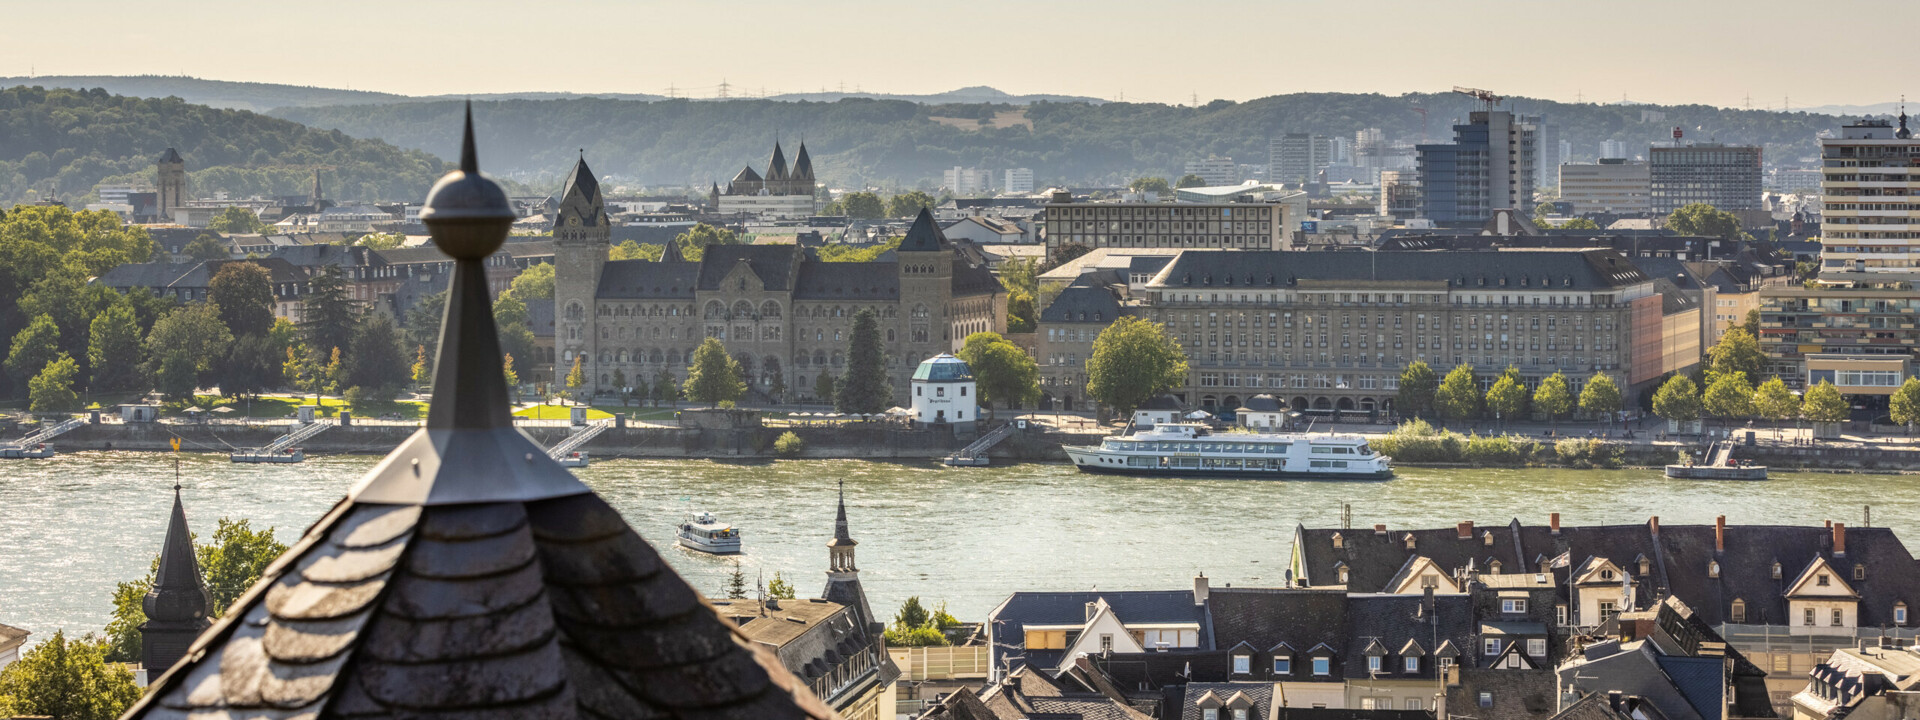 Ausblick über Koblenz vom Stadtteil Ehrenbreitstein aus mit mehreren Türmen, dem preußischen Regierungsgebäude, dem Pegelhaus und dem Rhein im Blick ©Koblenz-Touristik GmbH, Dominik Ketz